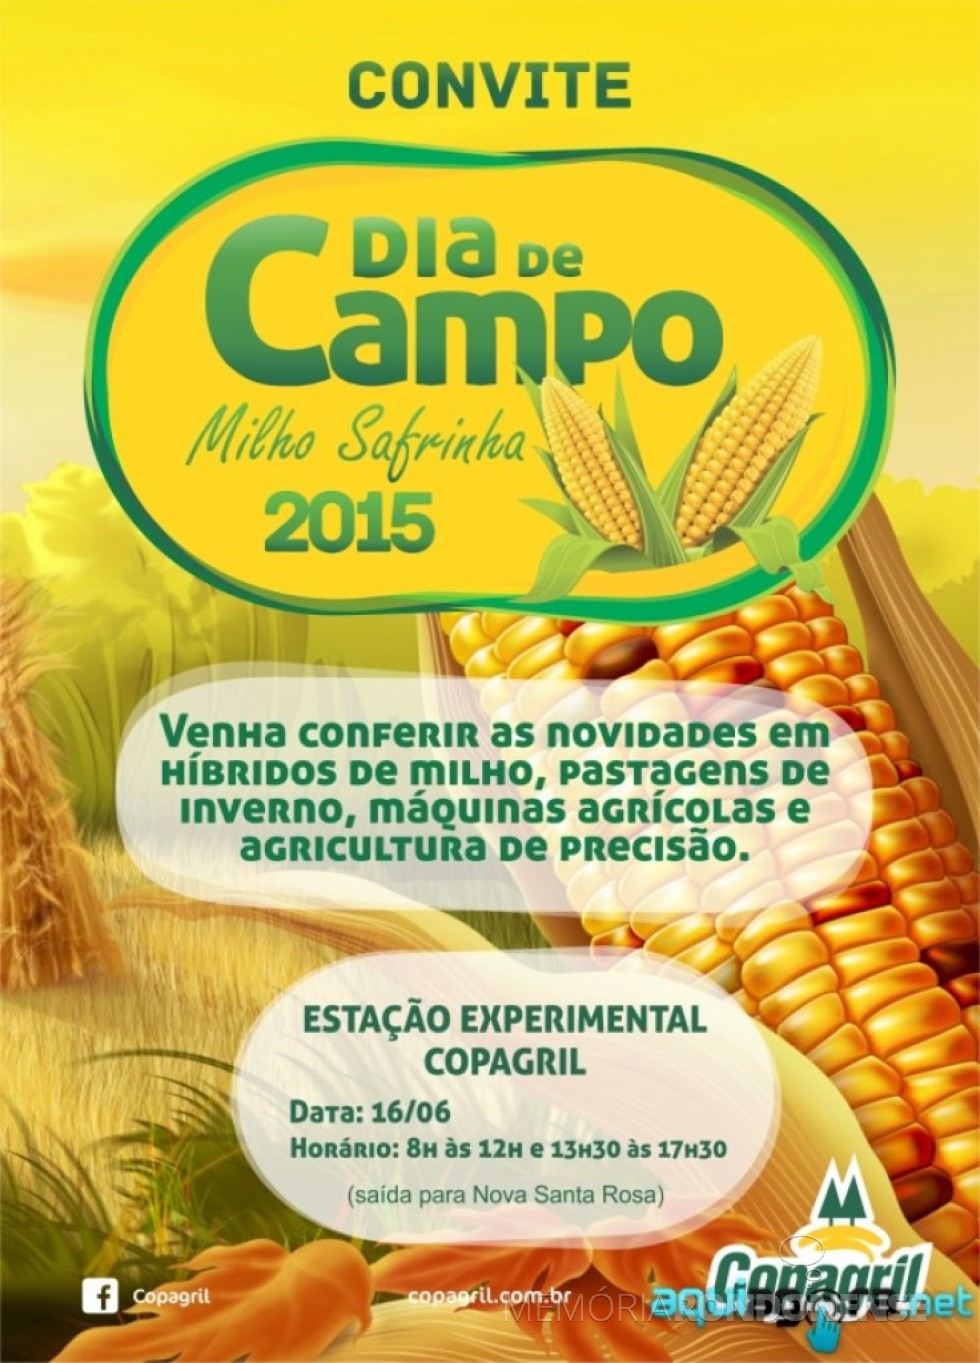 || Estampa do convite para o Dia de Campo Milho Safrinha Copagril 2015. 
Imagem: Acervo AquiAgora.net - FOTO 1 -